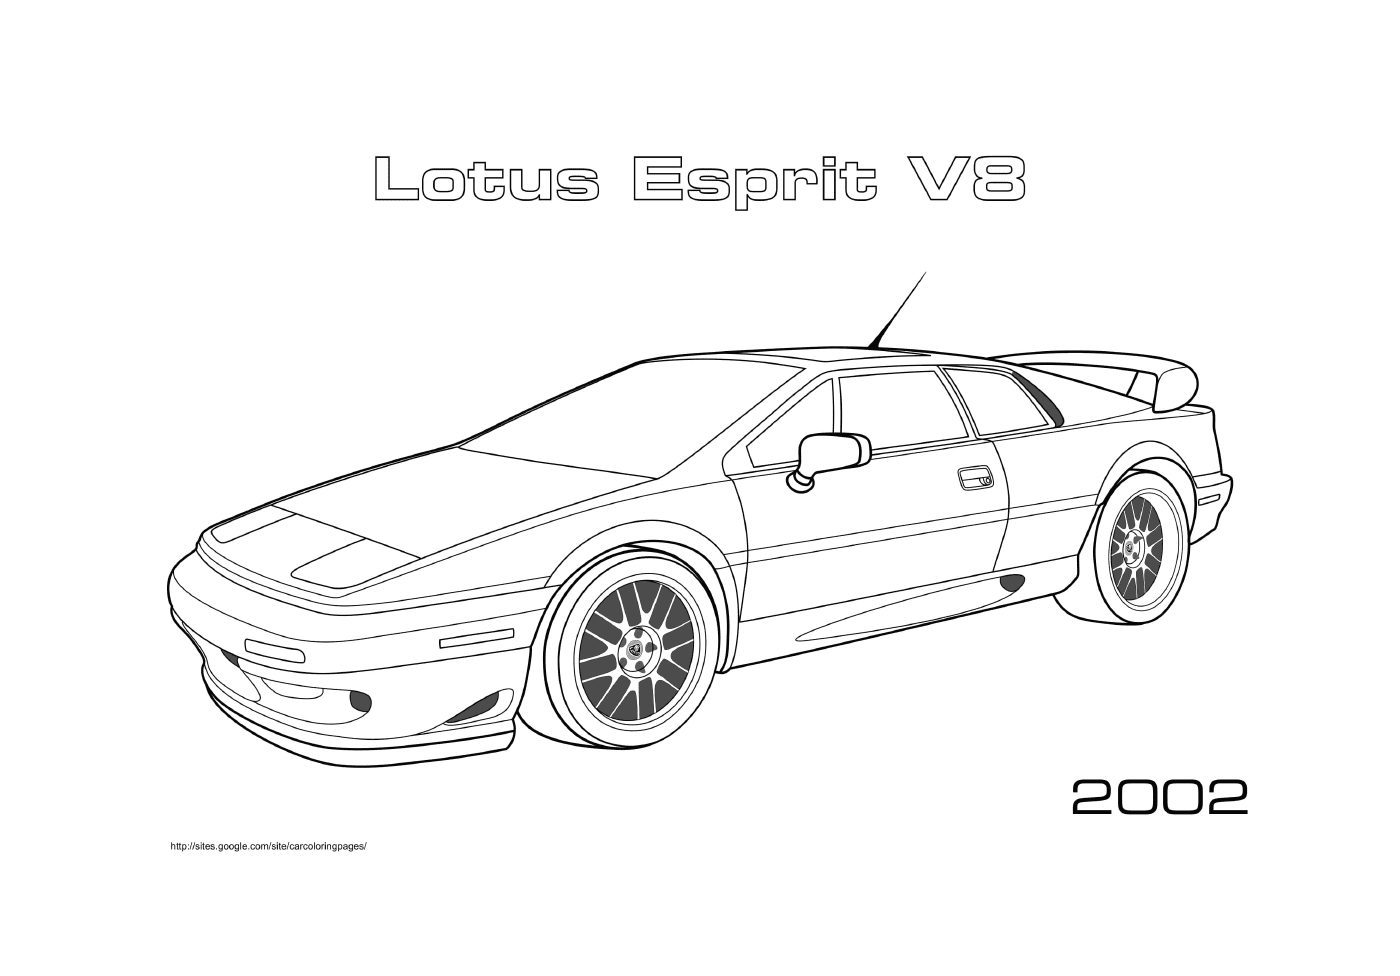  Lotus Esprit V8 of 2002 